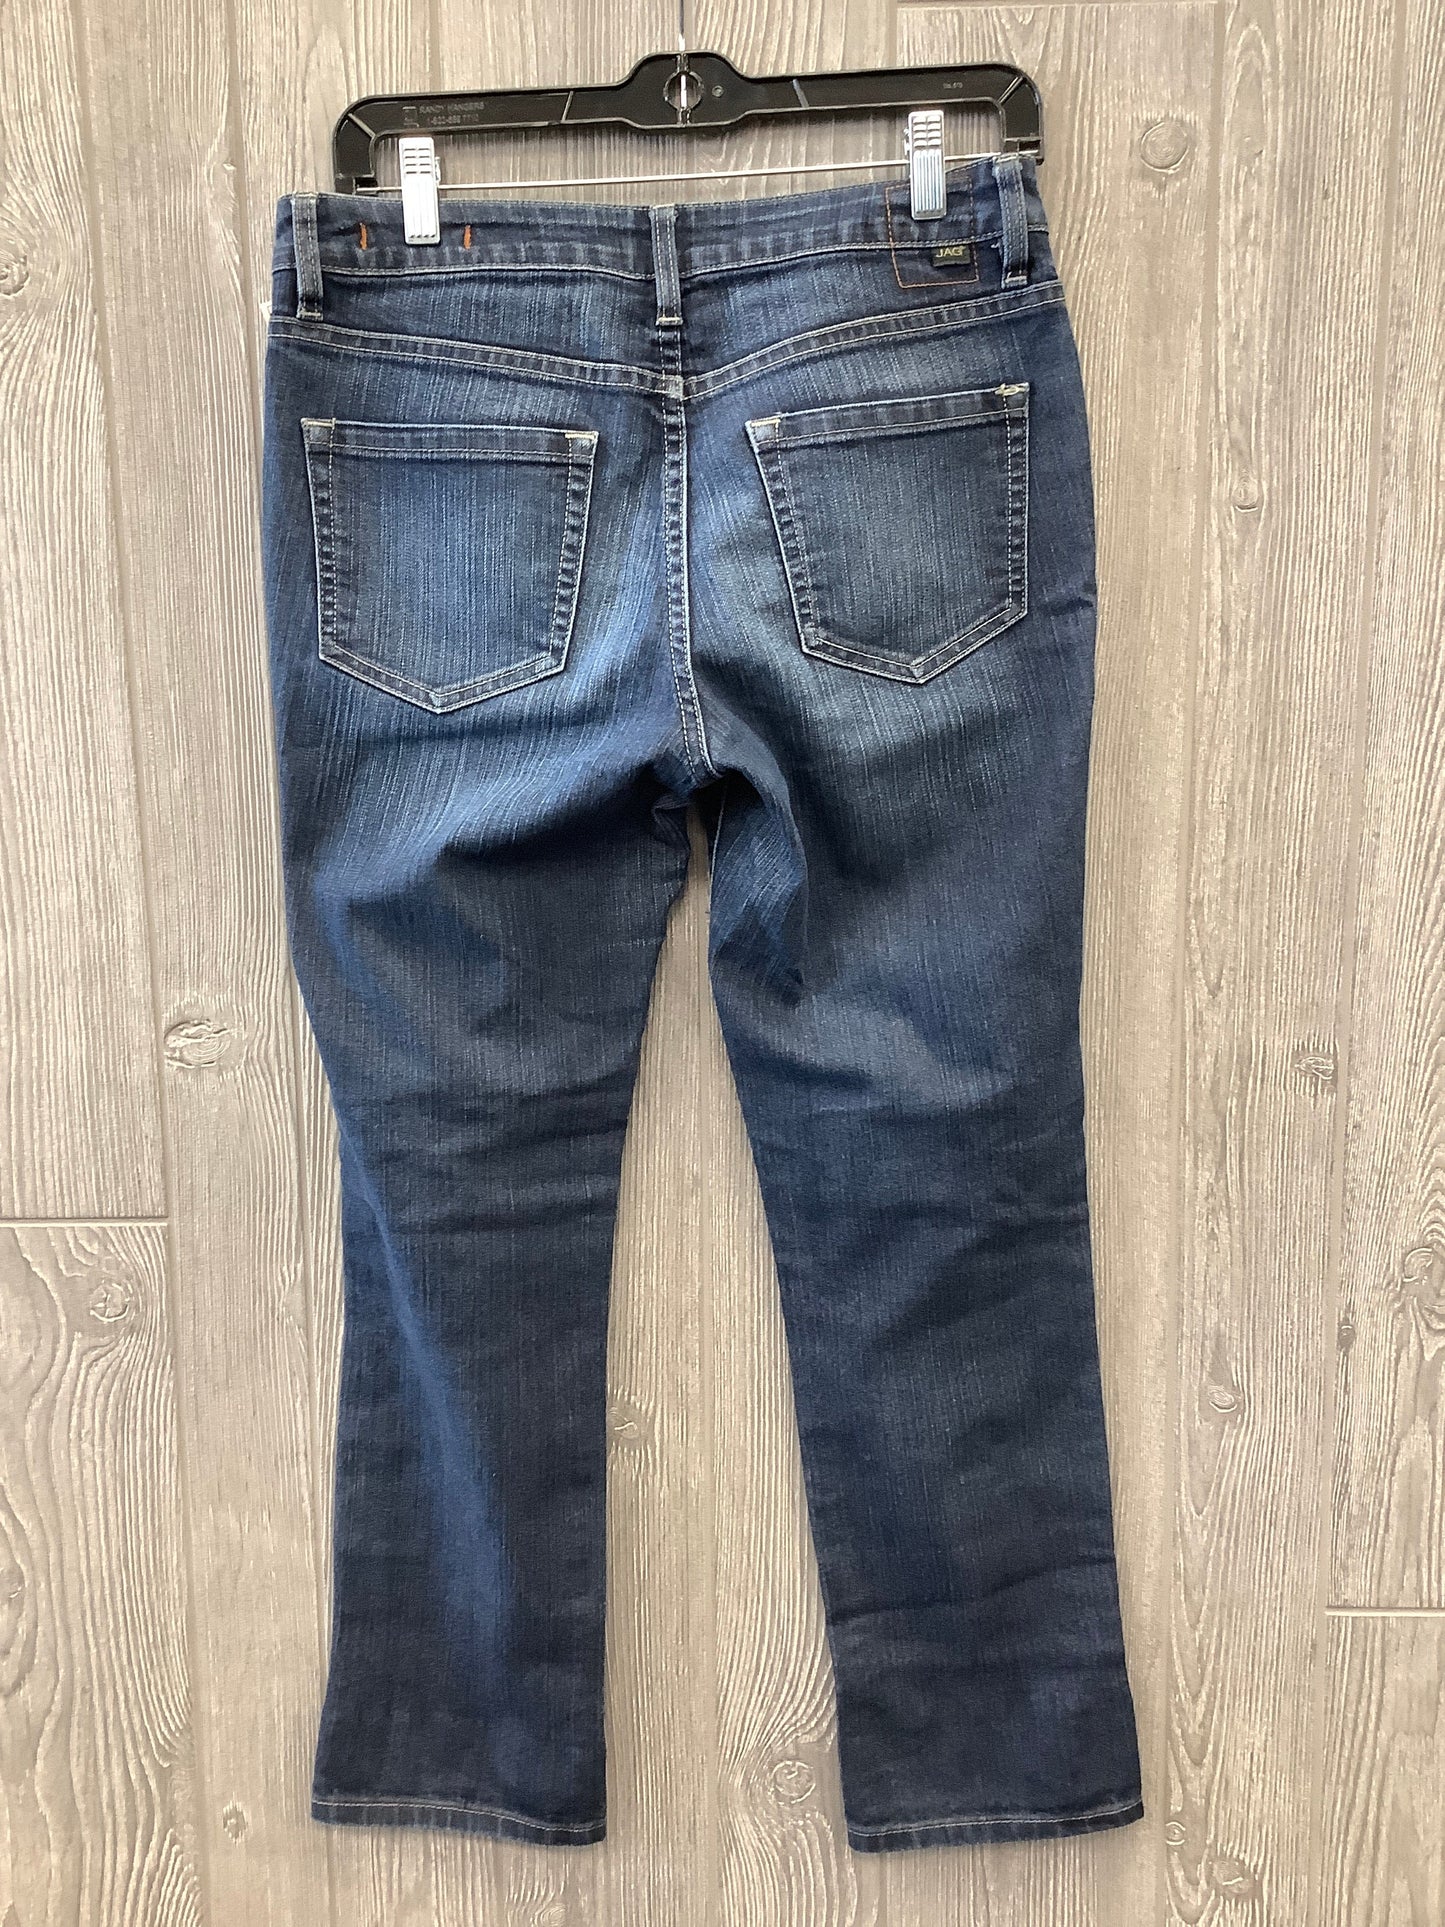 Blue Denim Jeans Boot Cut Jag, Size 6